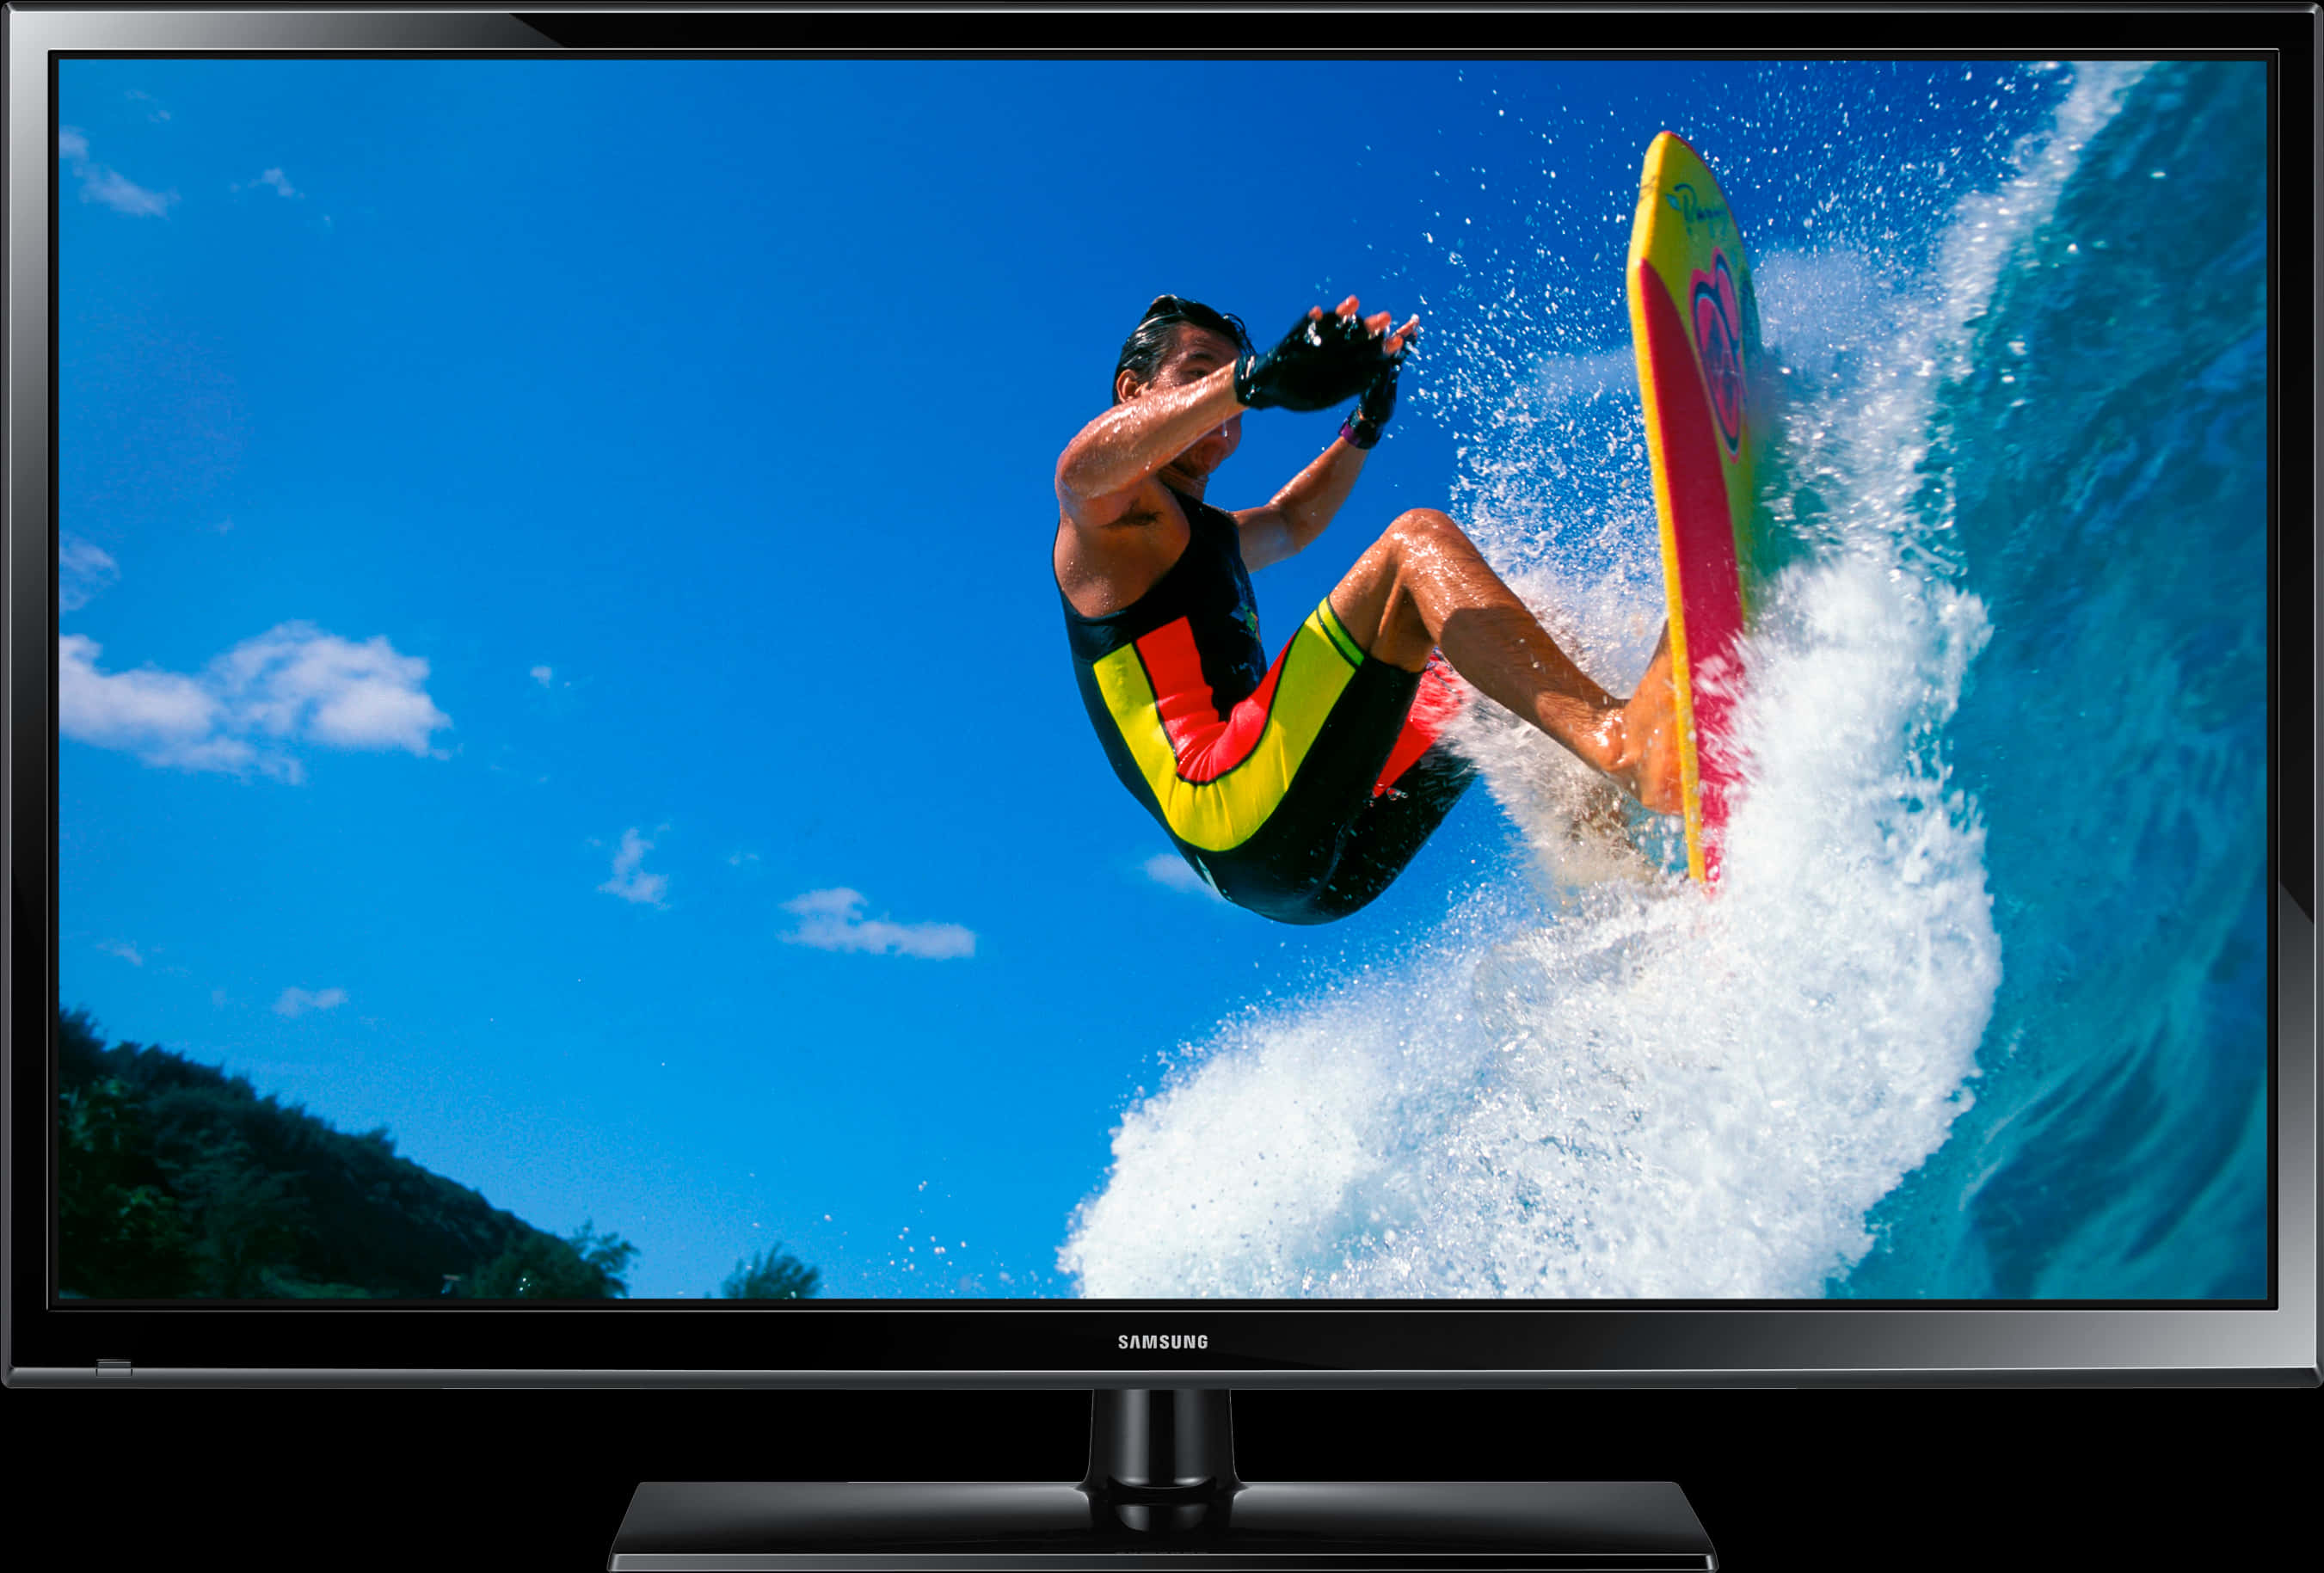 Surfer Action Displayedon Samsung L E D T V